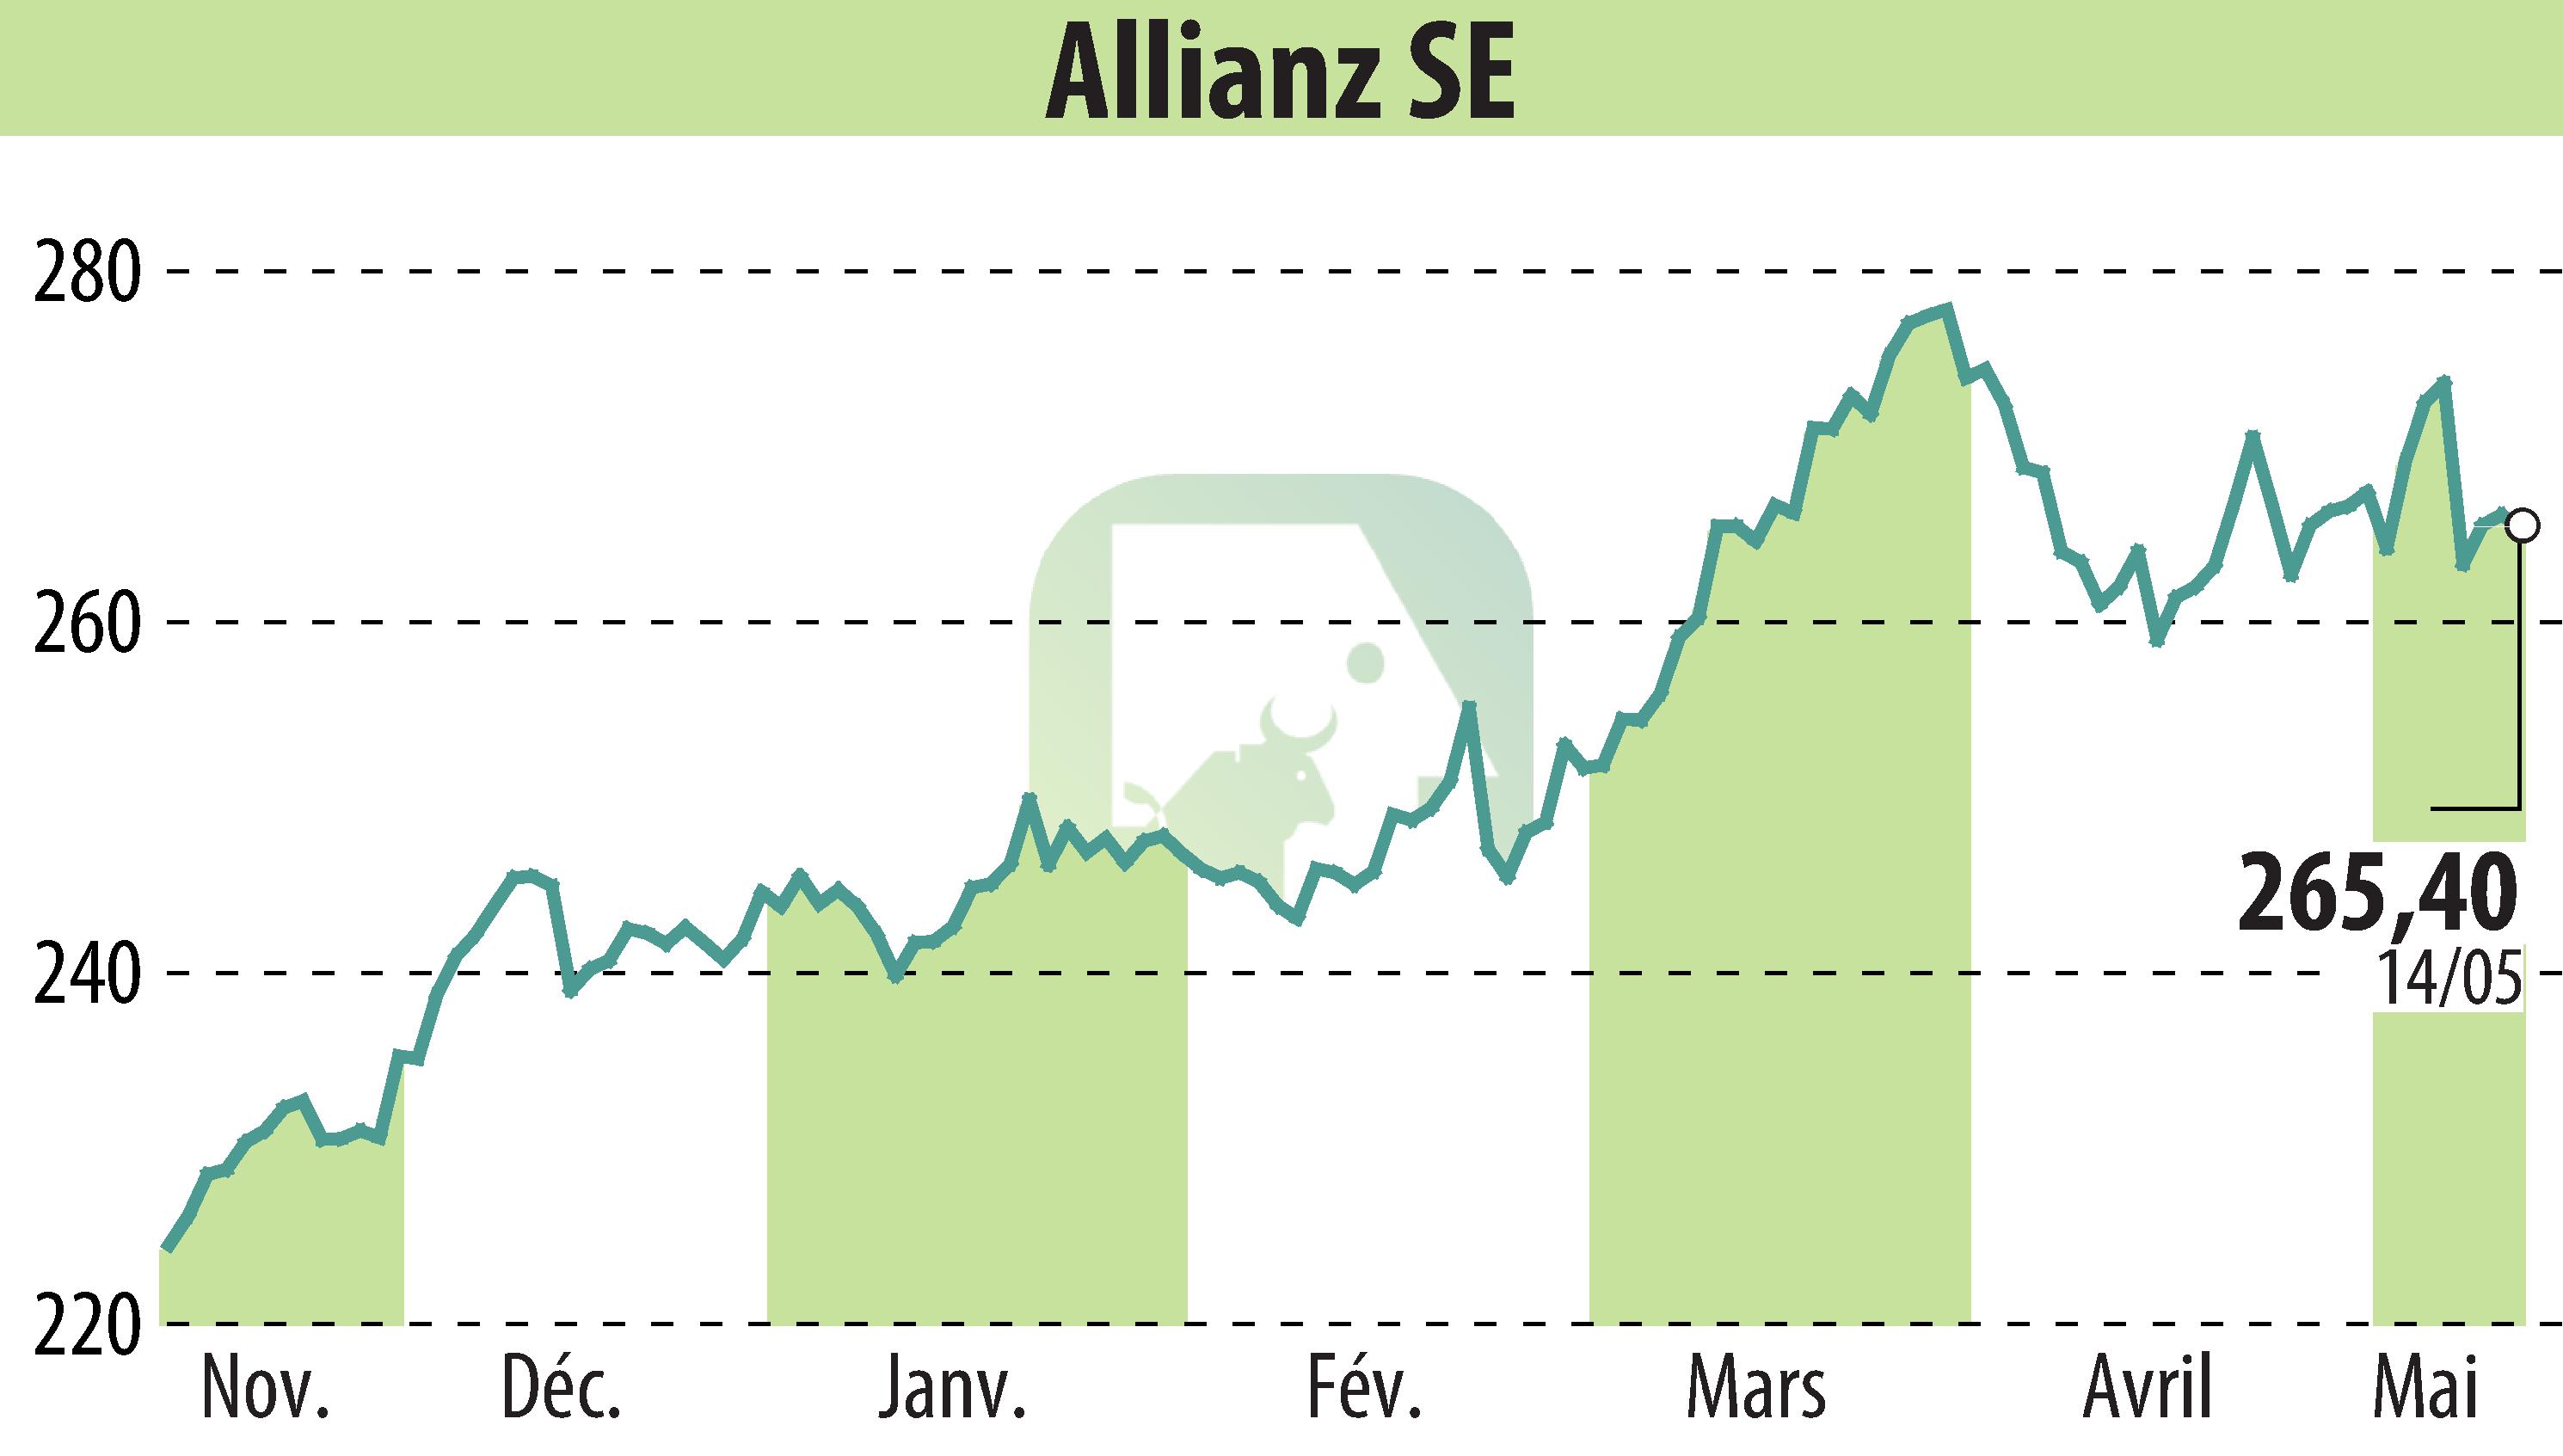 Graphique de l'évolution du cours de l'action Allianz SE (EBR:ALV).